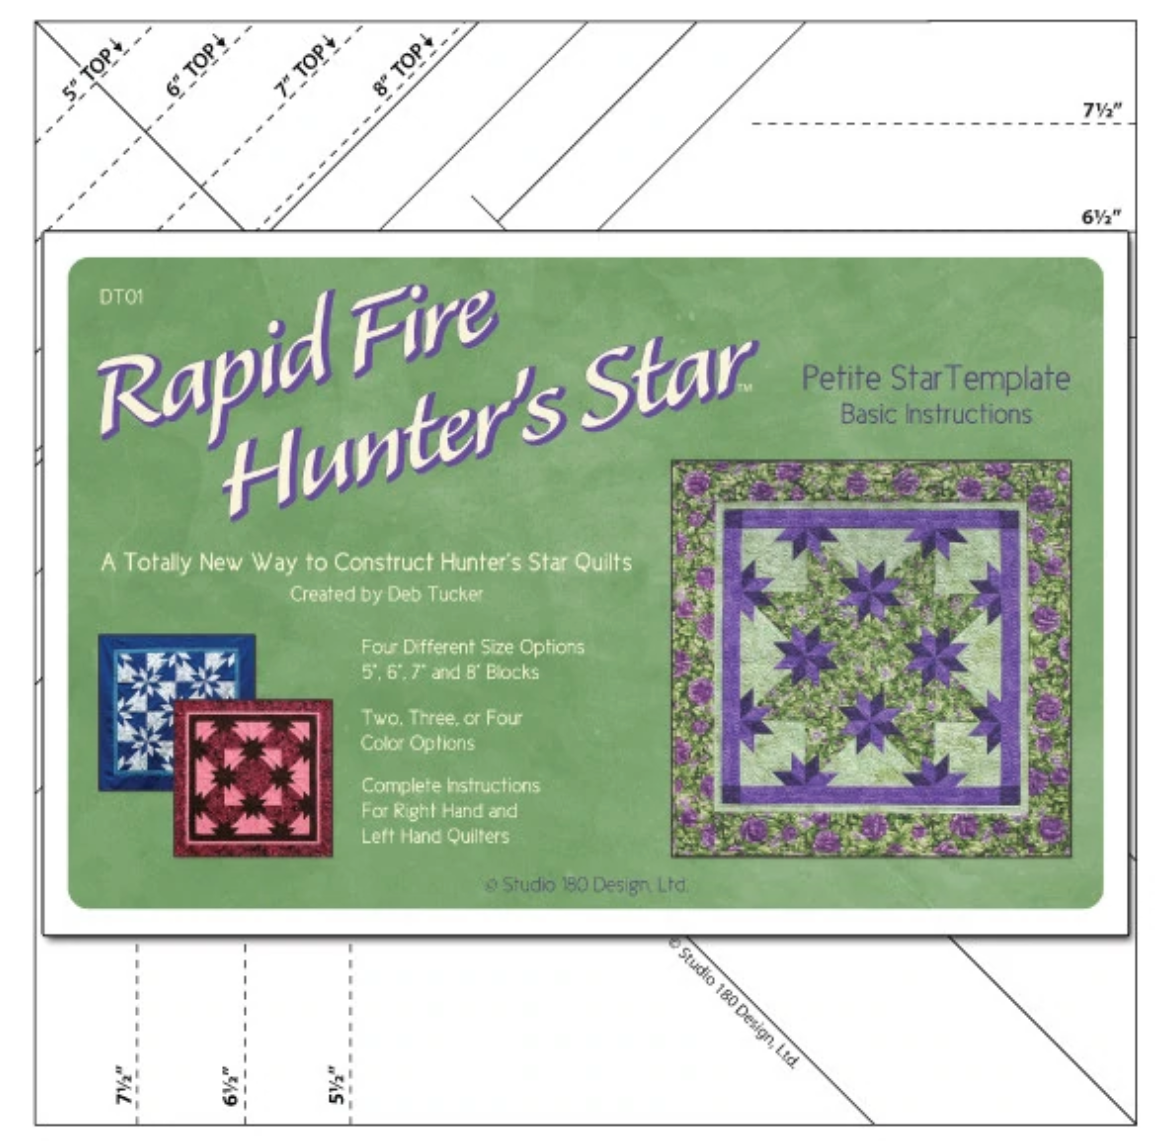 RAPID FIRE HUNTER’S STAR: PETITE STAR TOOL - DT01